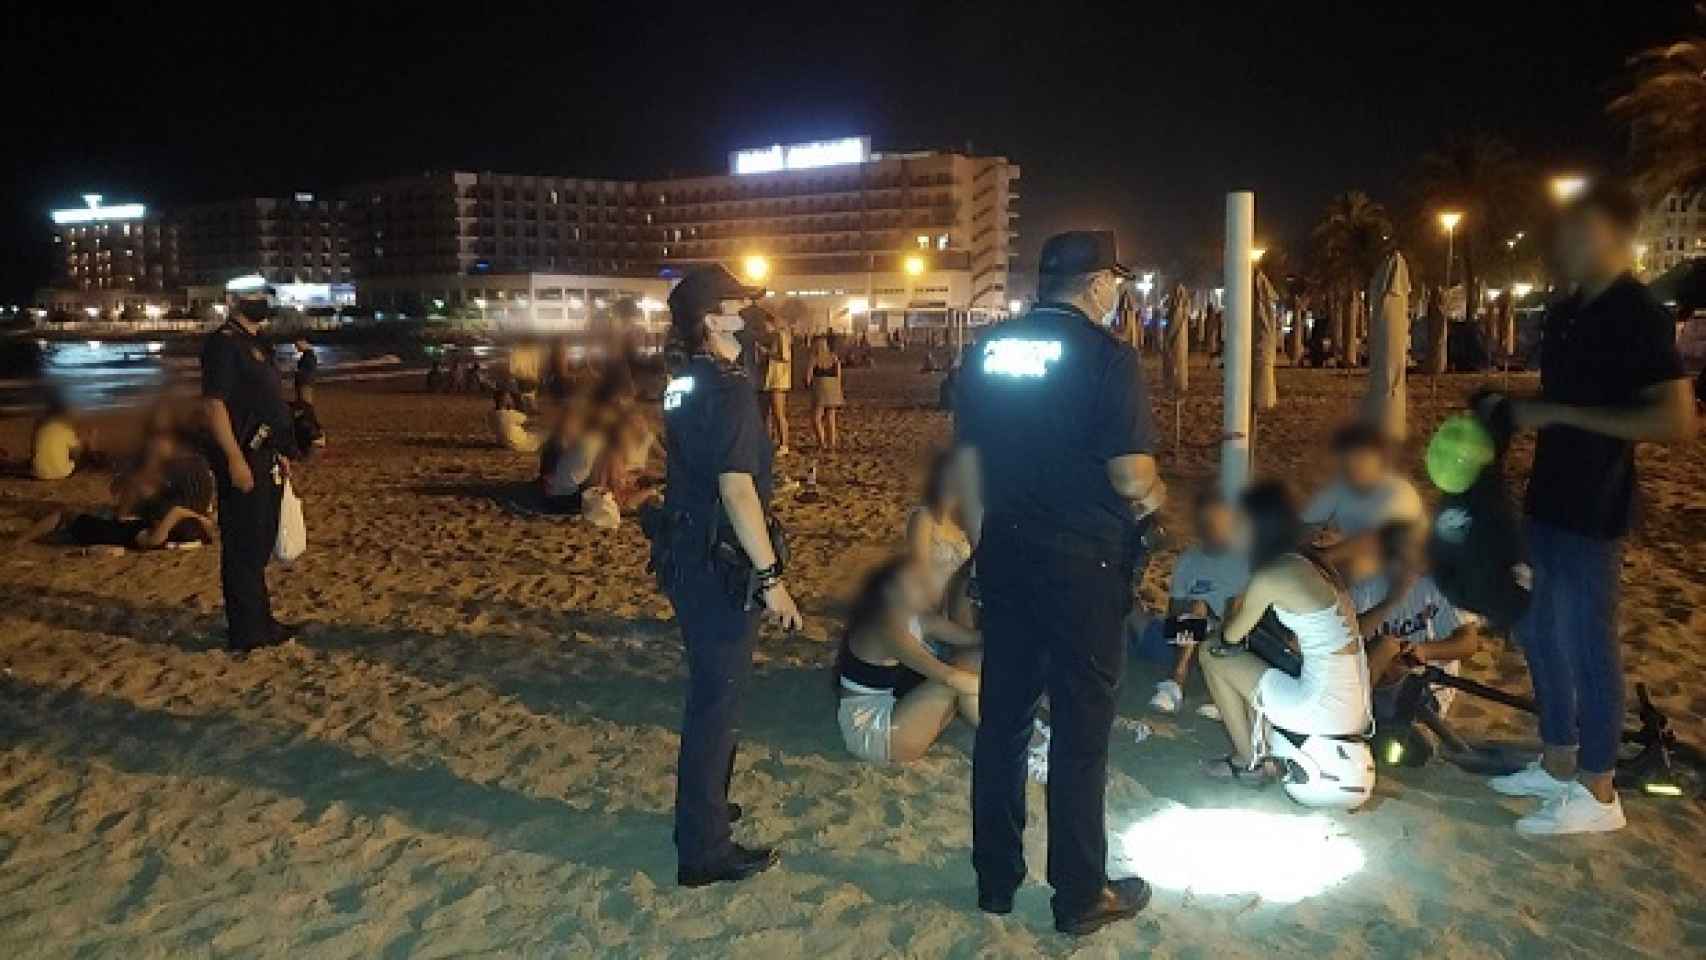 Policía dispersando un botellón en la playa, en imagen de archivo.